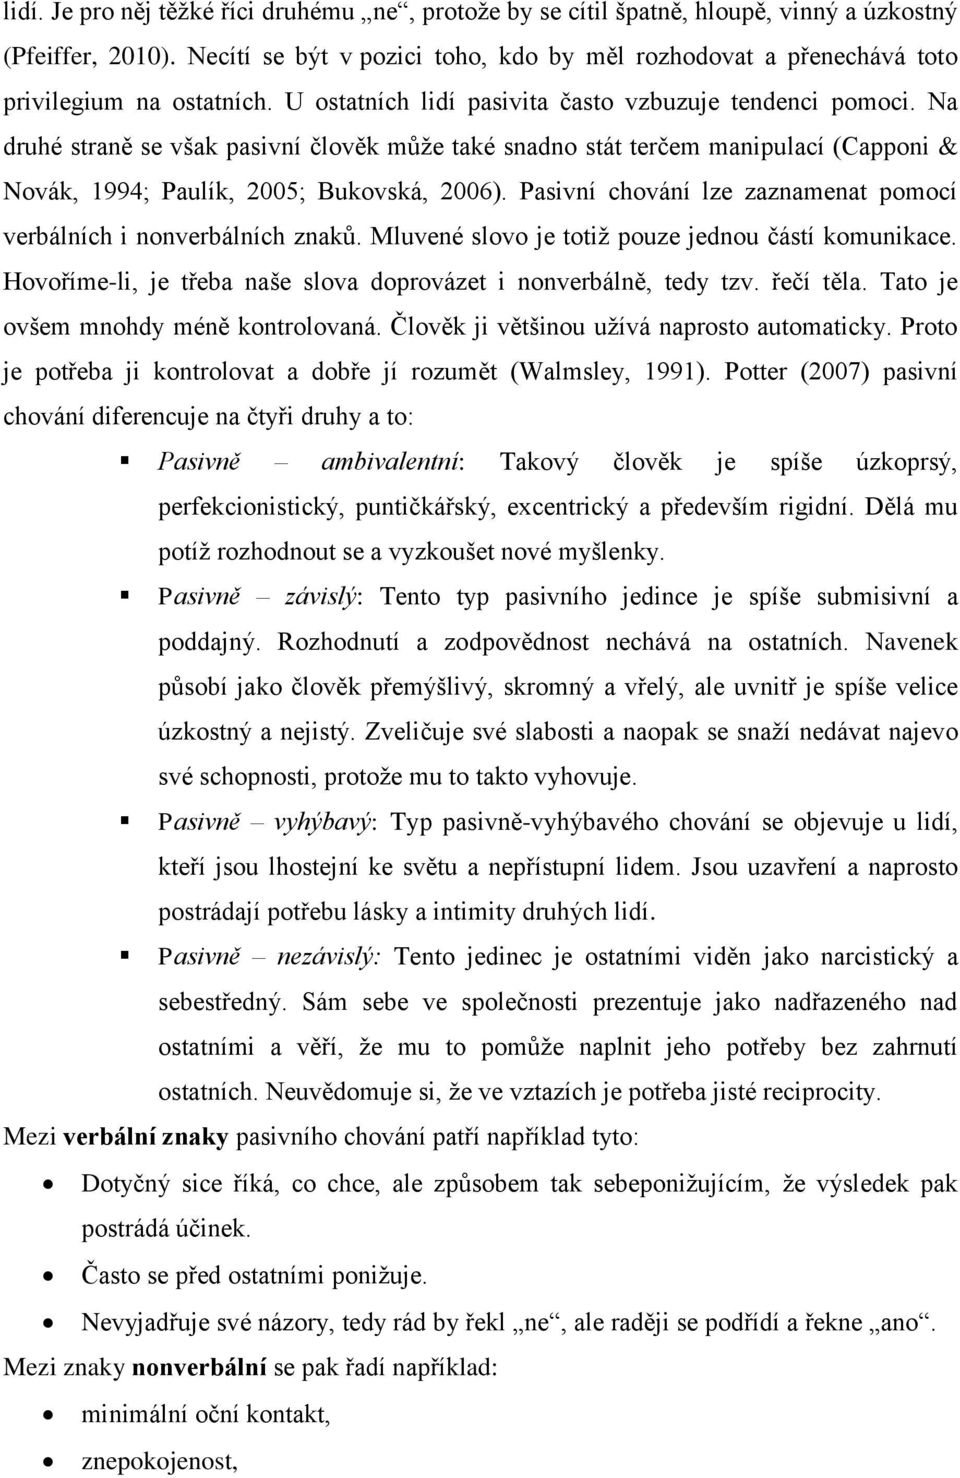 Na druhé straně se však pasivní člověk můţe také snadno stát terčem manipulací (Capponi & Novák, 1994; Paulík, 2005; Bukovská, 2006).